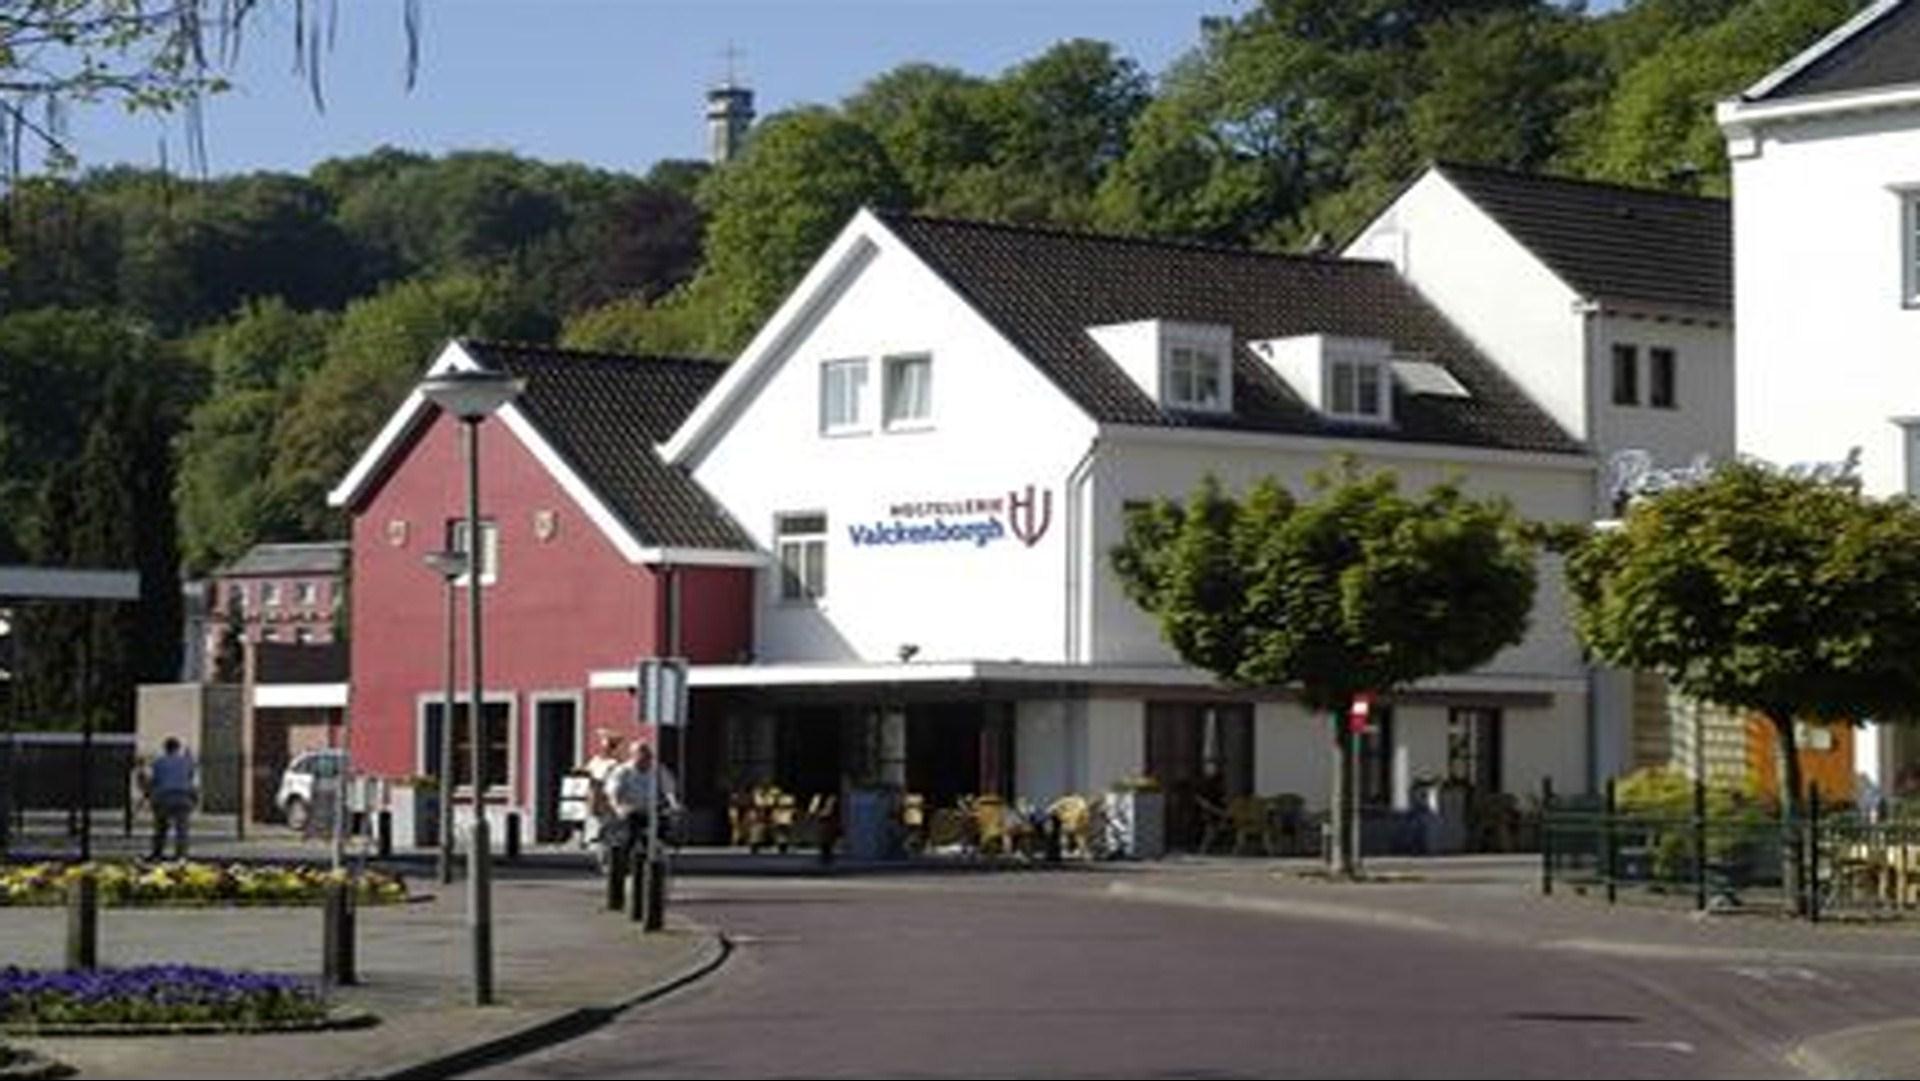 Hotel Hostellerie Valckenborgh in Valkenburg aan de Geul, NL